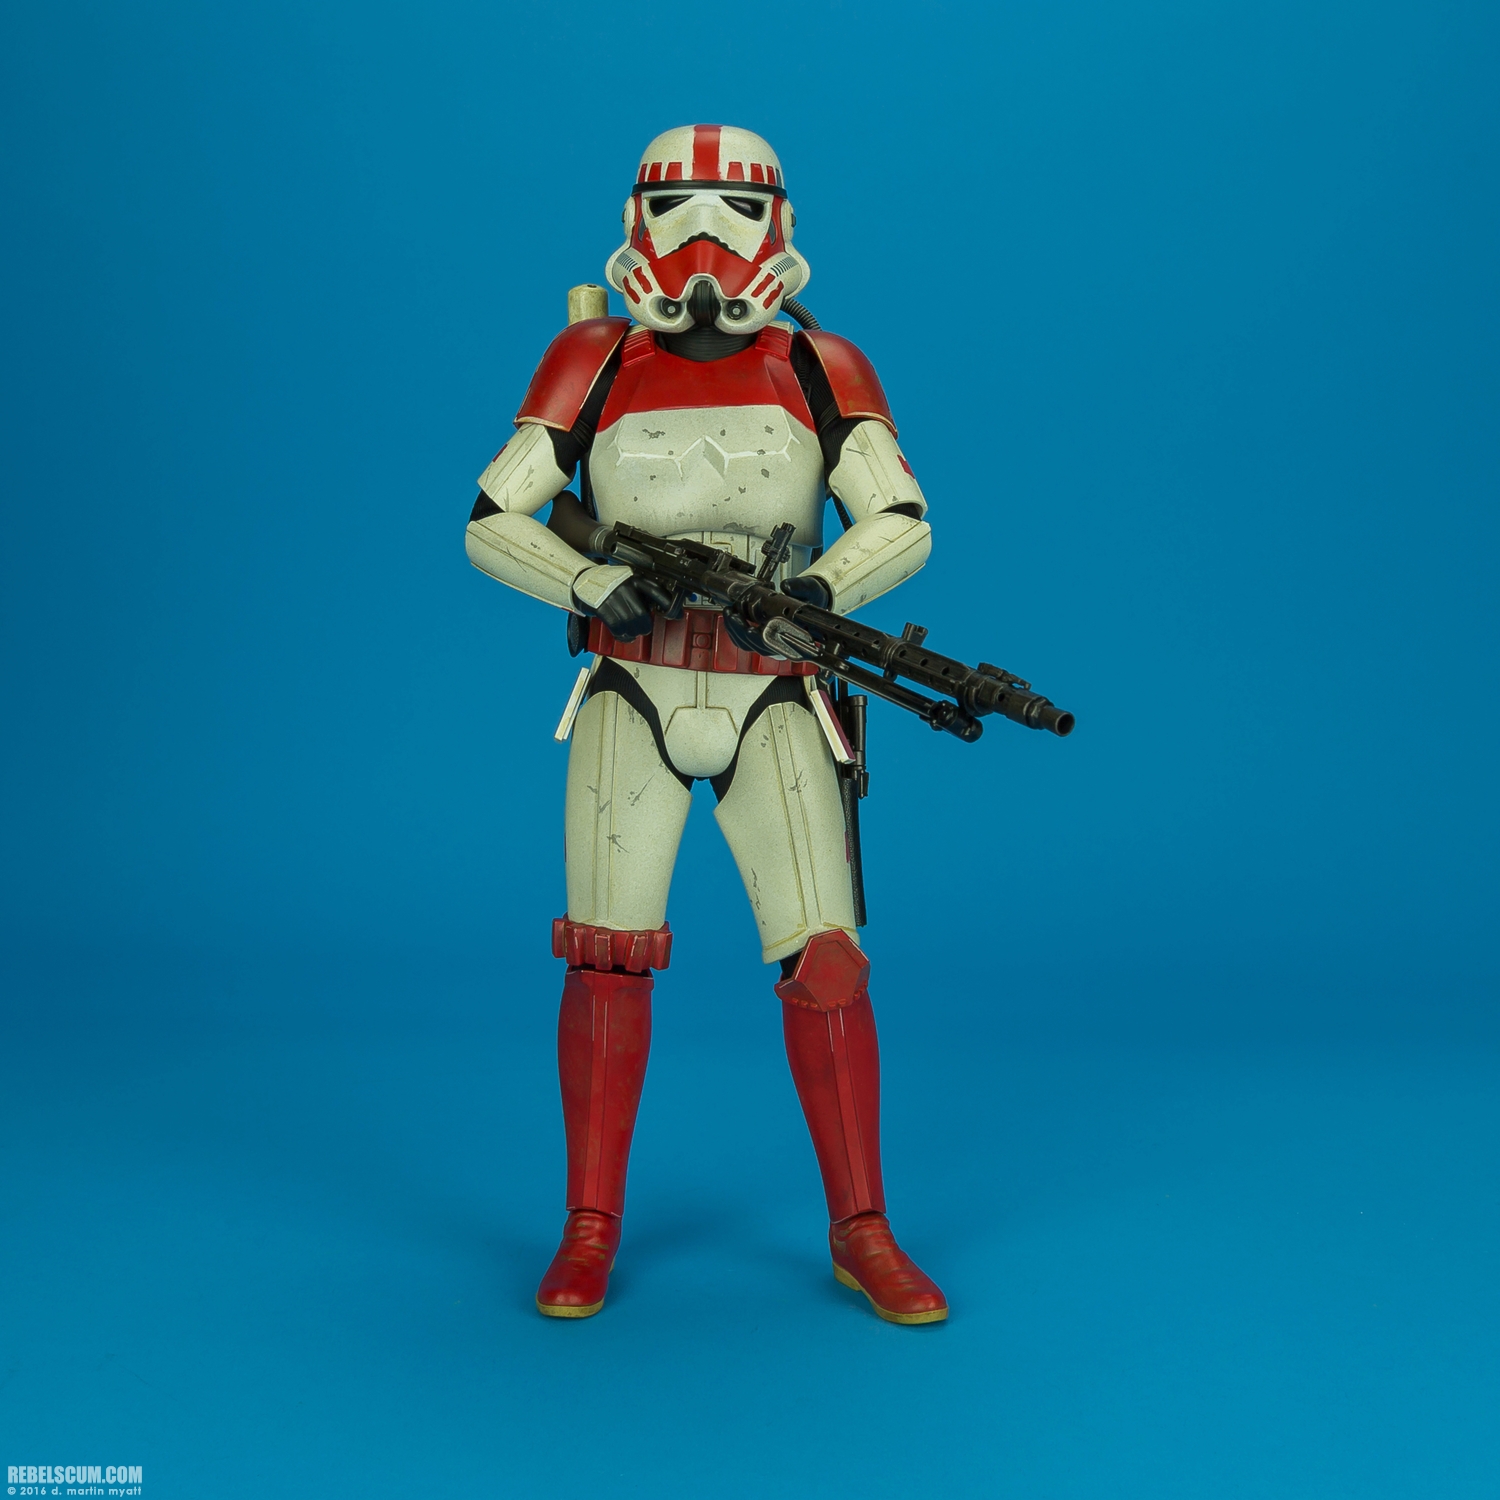 VGM020-Shock-Trooper-Star-Wars-Battlefront-Hot-Toys-005.jpg